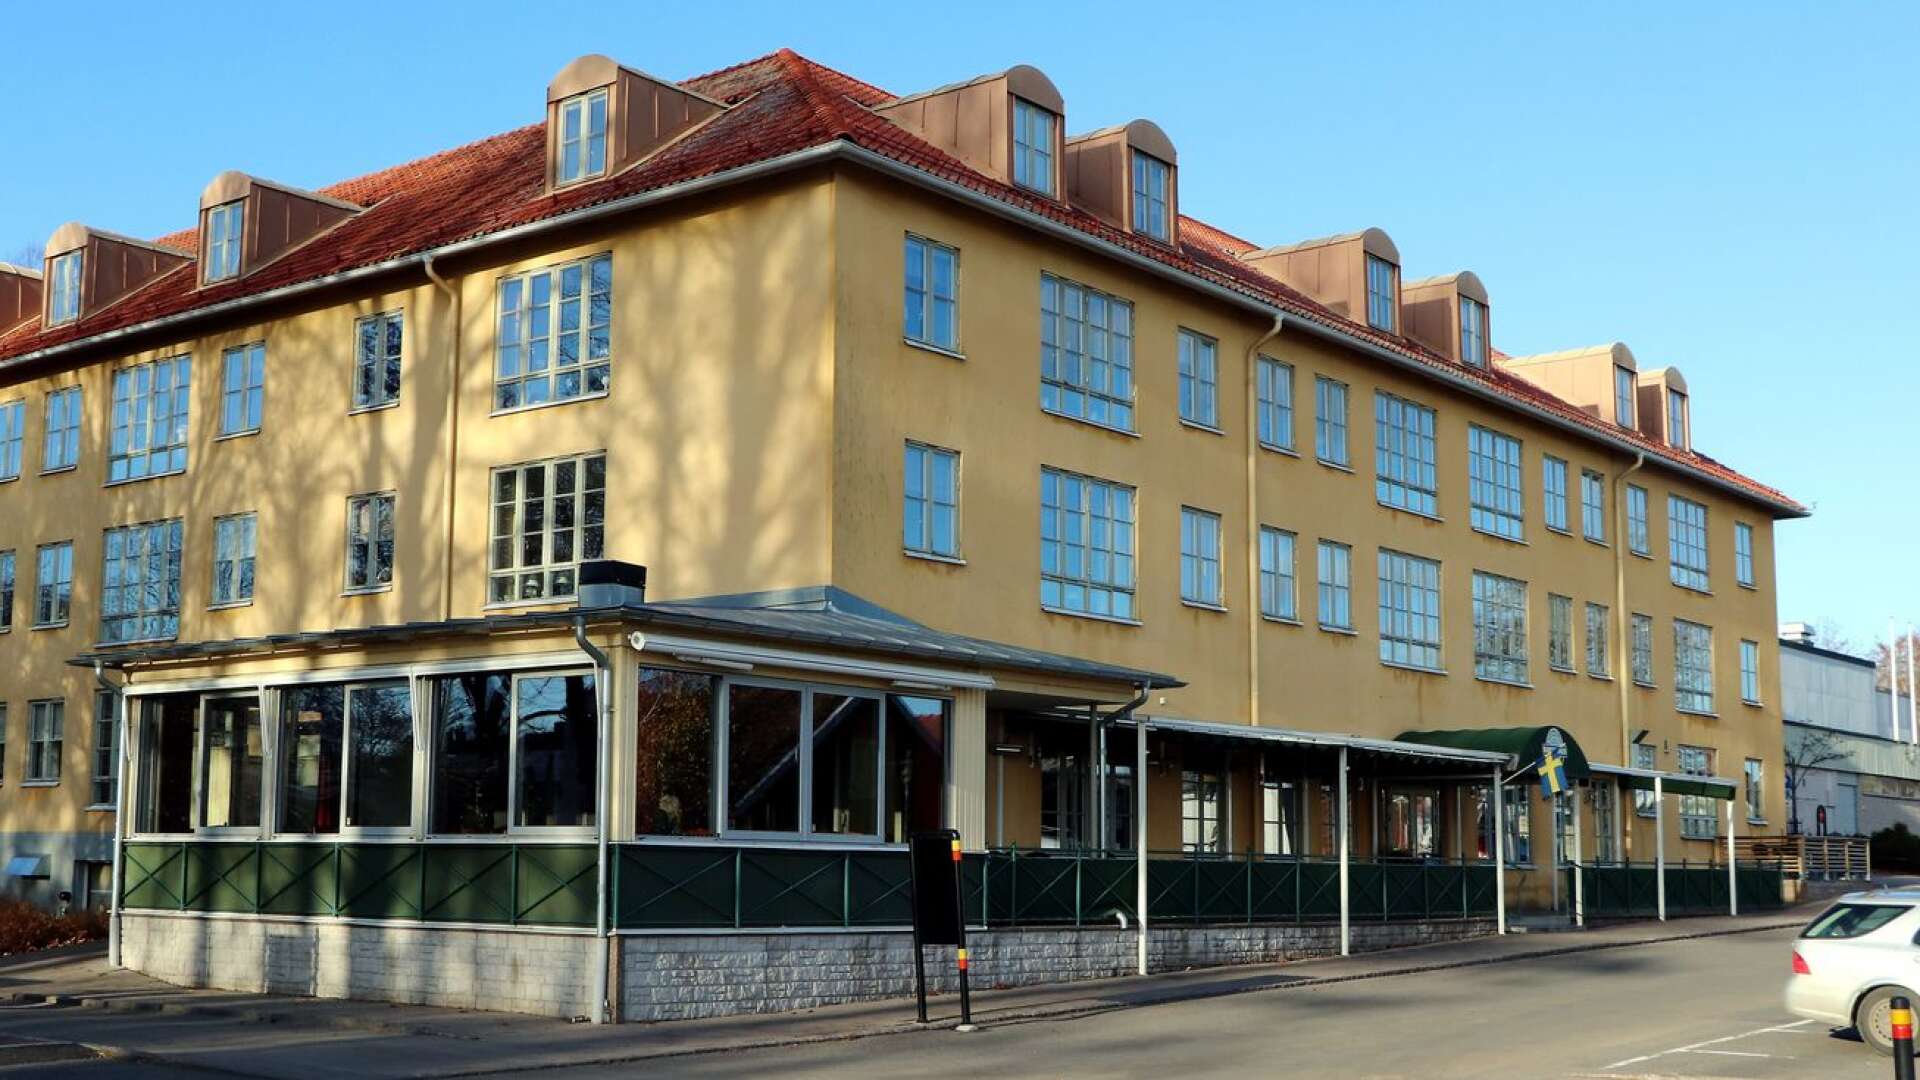 Nya Hamnkrogen i Hjo fortsätter sin restaurangverksamhet som tidigare och det finns inga planer på att stänga, säger ägaren Christian Laveryd efter att den tidigare ägarens bolag begärts i konkurs.